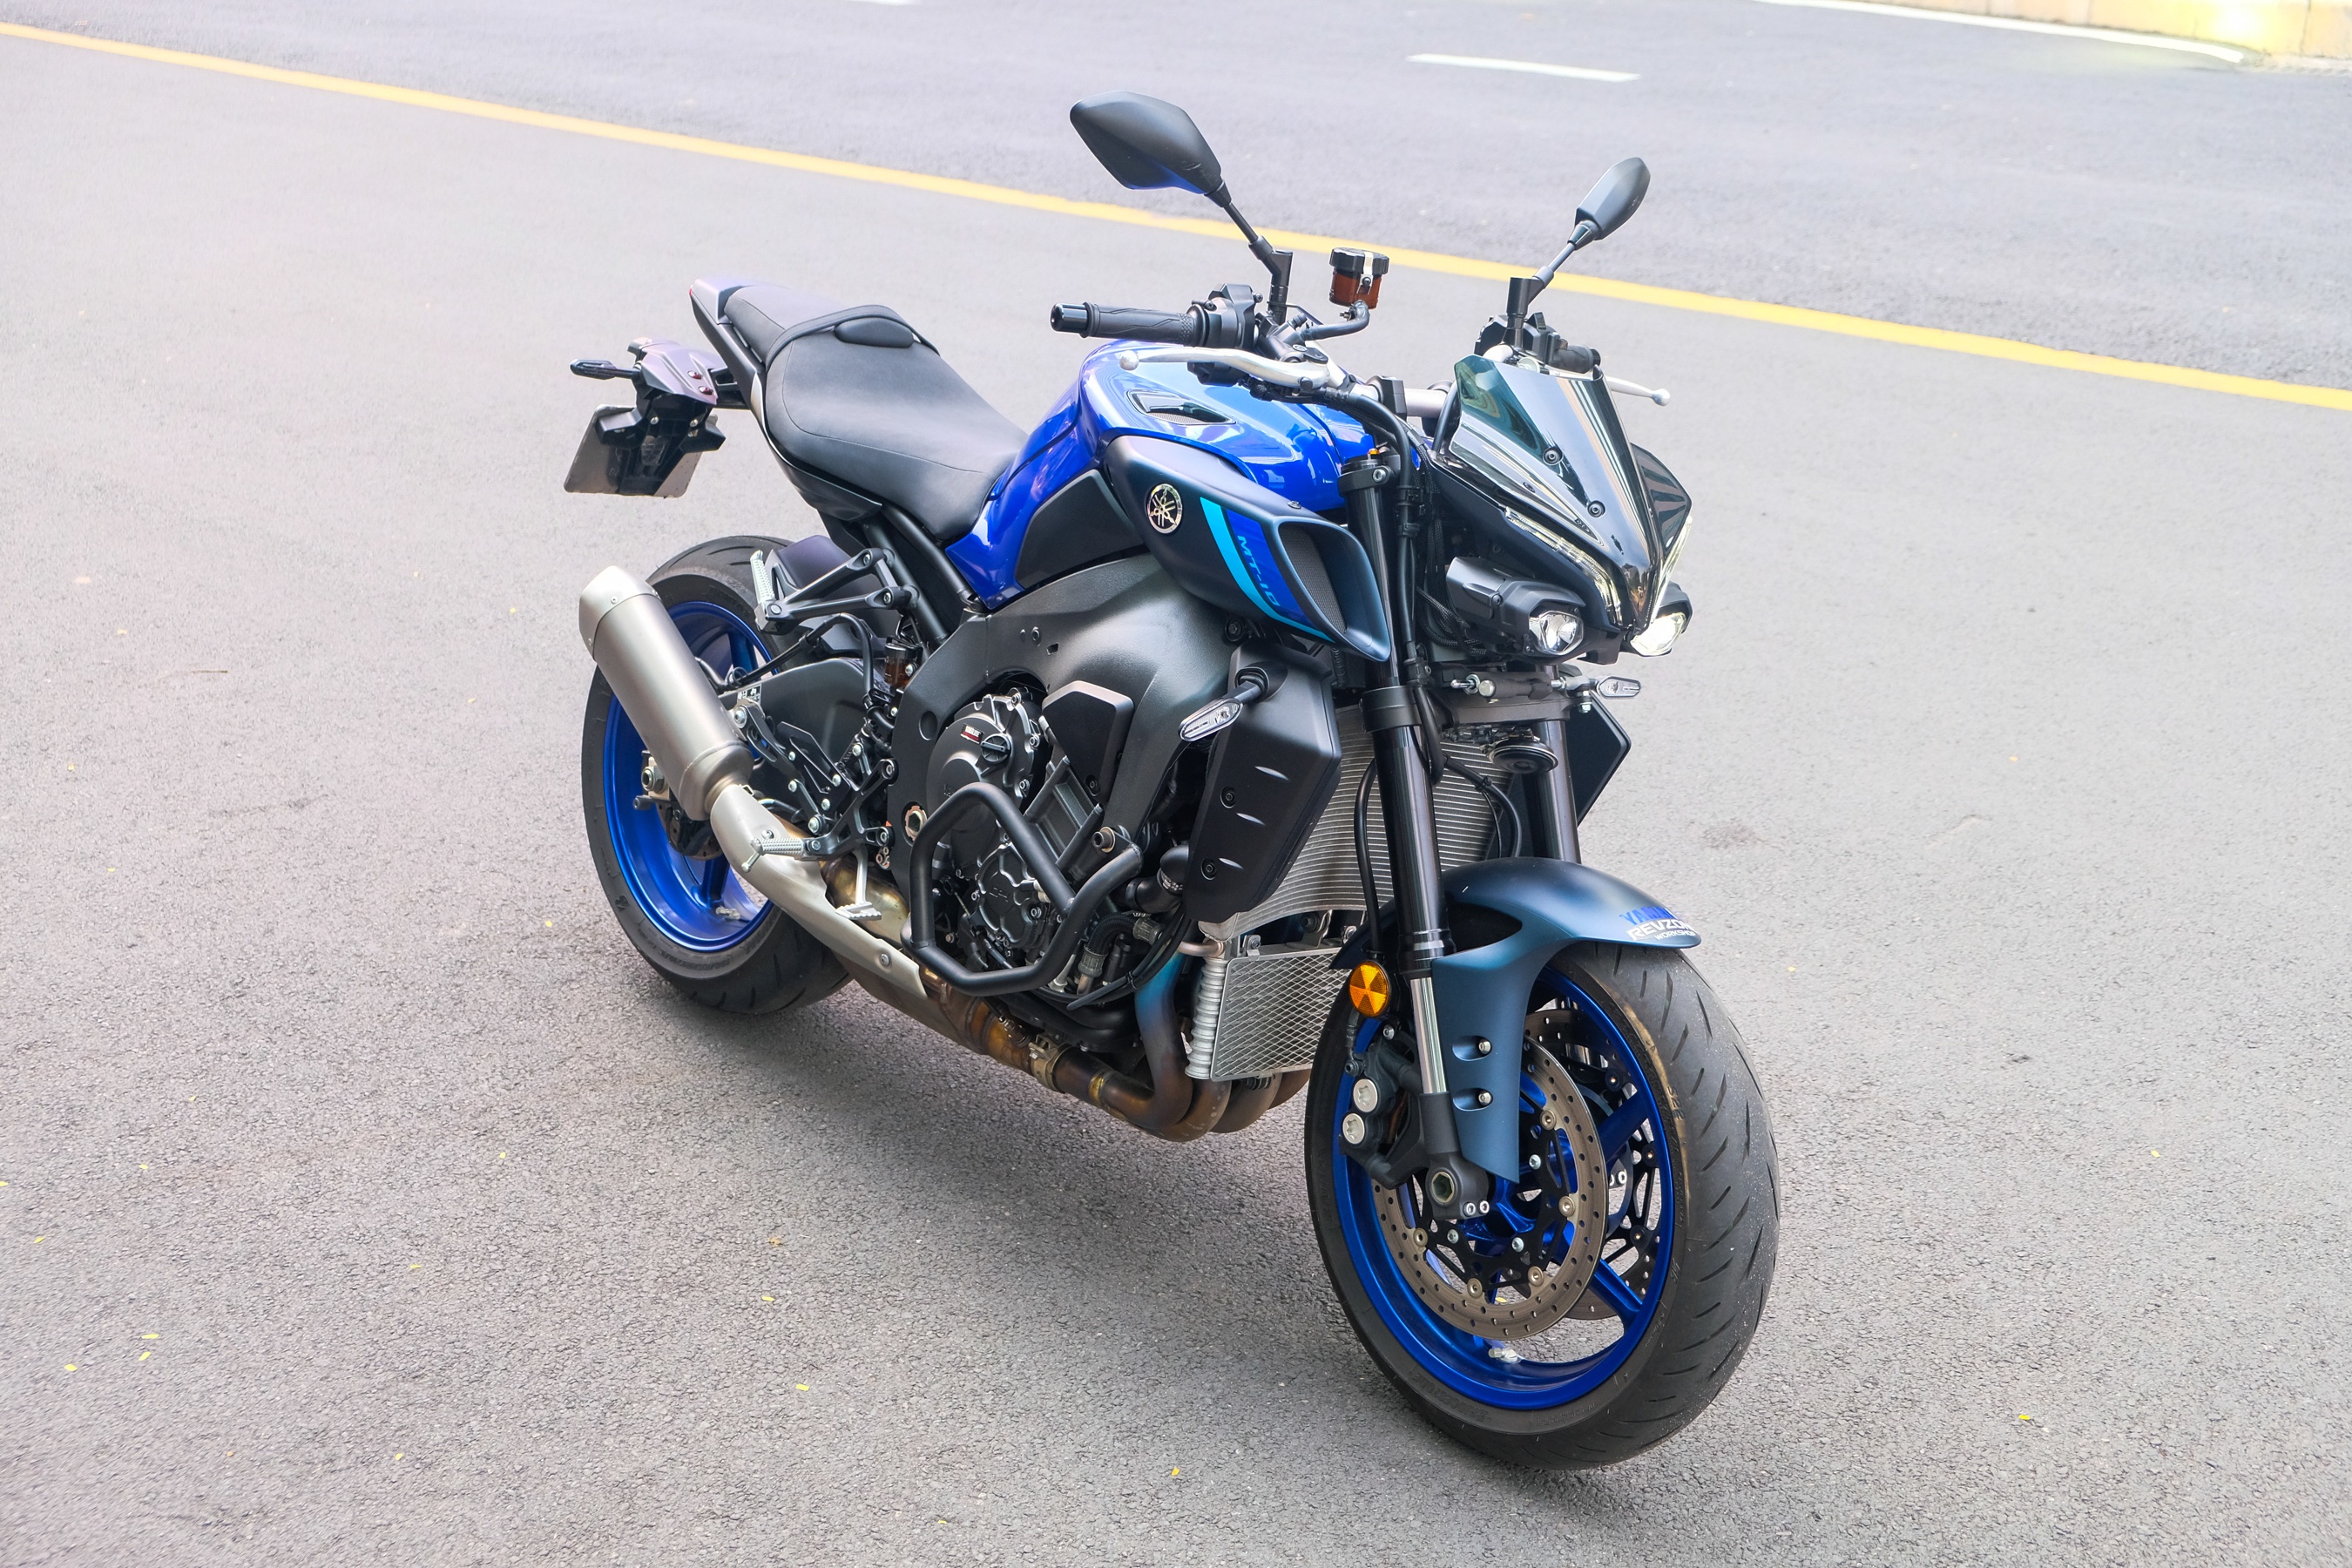 Đánh giá Yamaha MT-10 thế hệ mới - mẫu nakedbike giá nửa tỷ đồng - ảnh 7